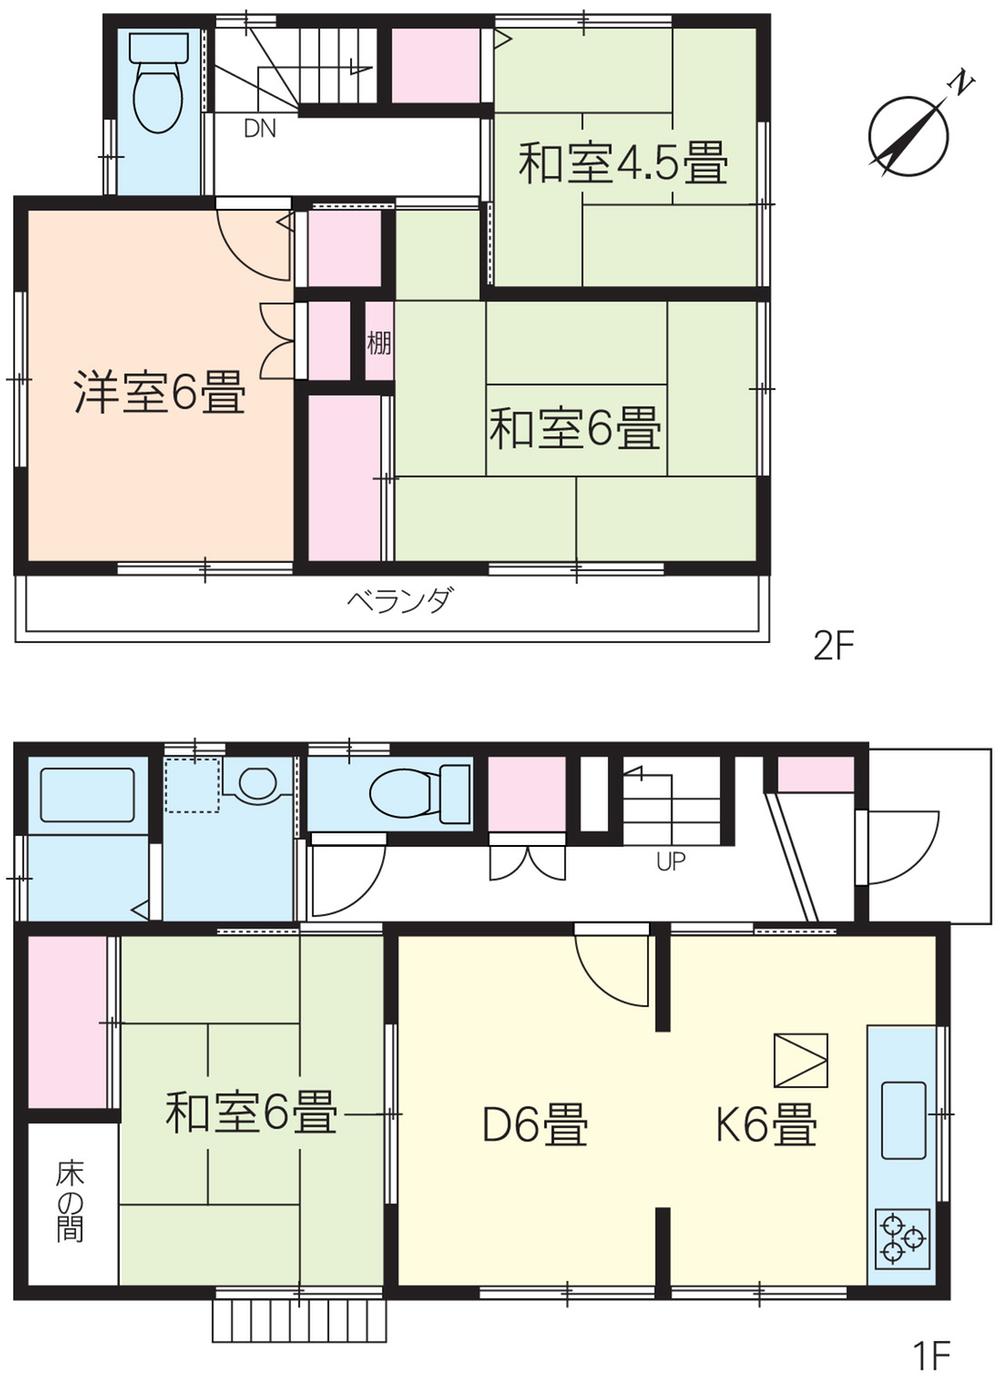 Floor plan. 13.4 million yen, 4DK, Land area 121.21 sq m , Building area 85.92 sq m